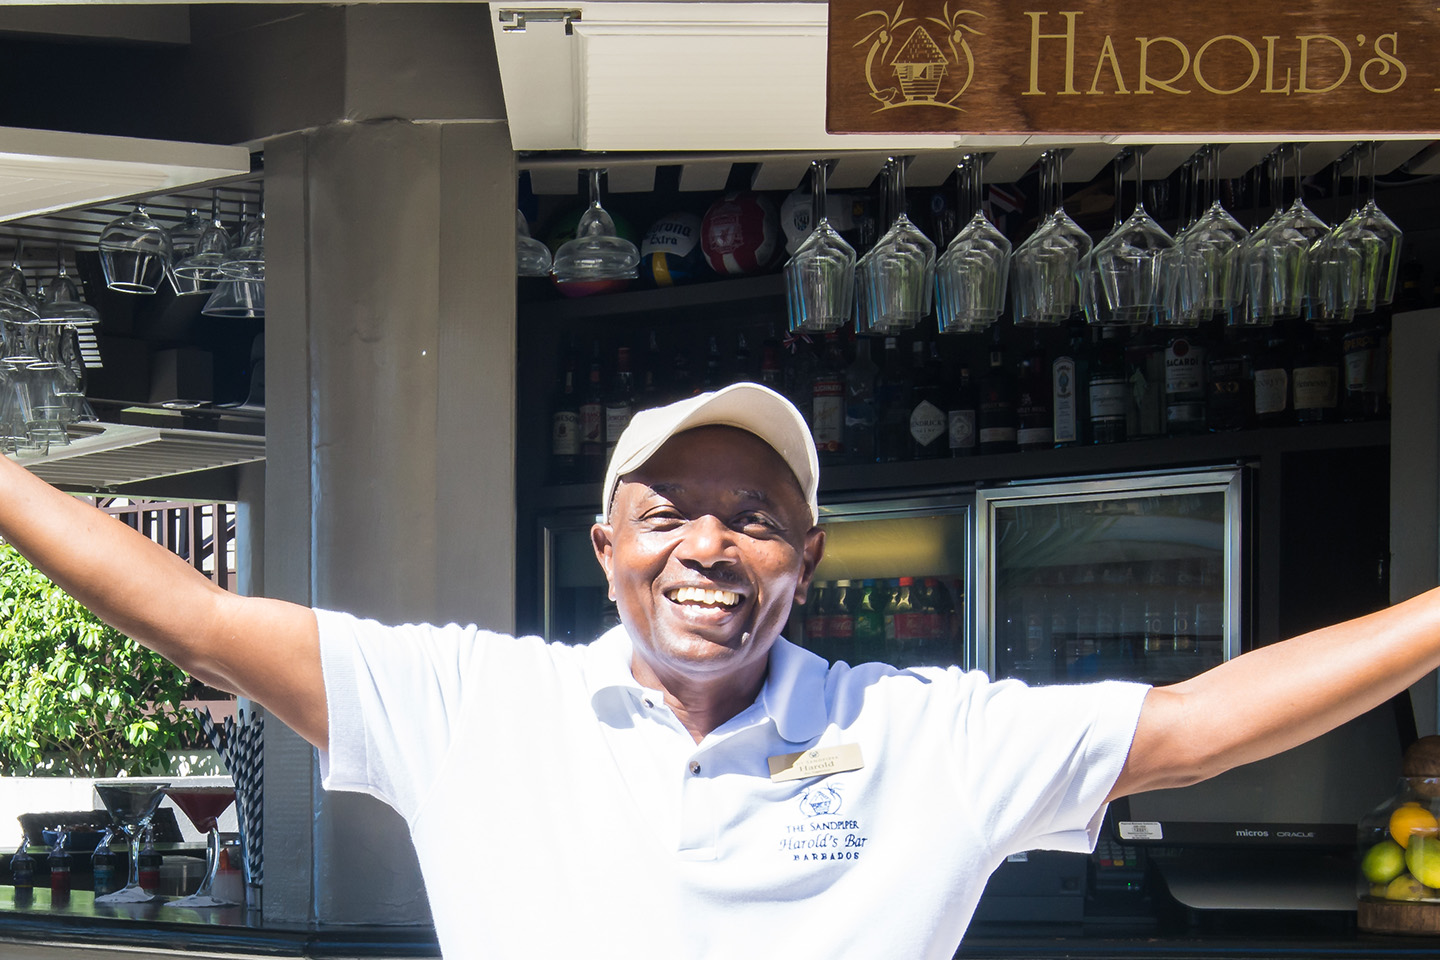 Harold's Bar